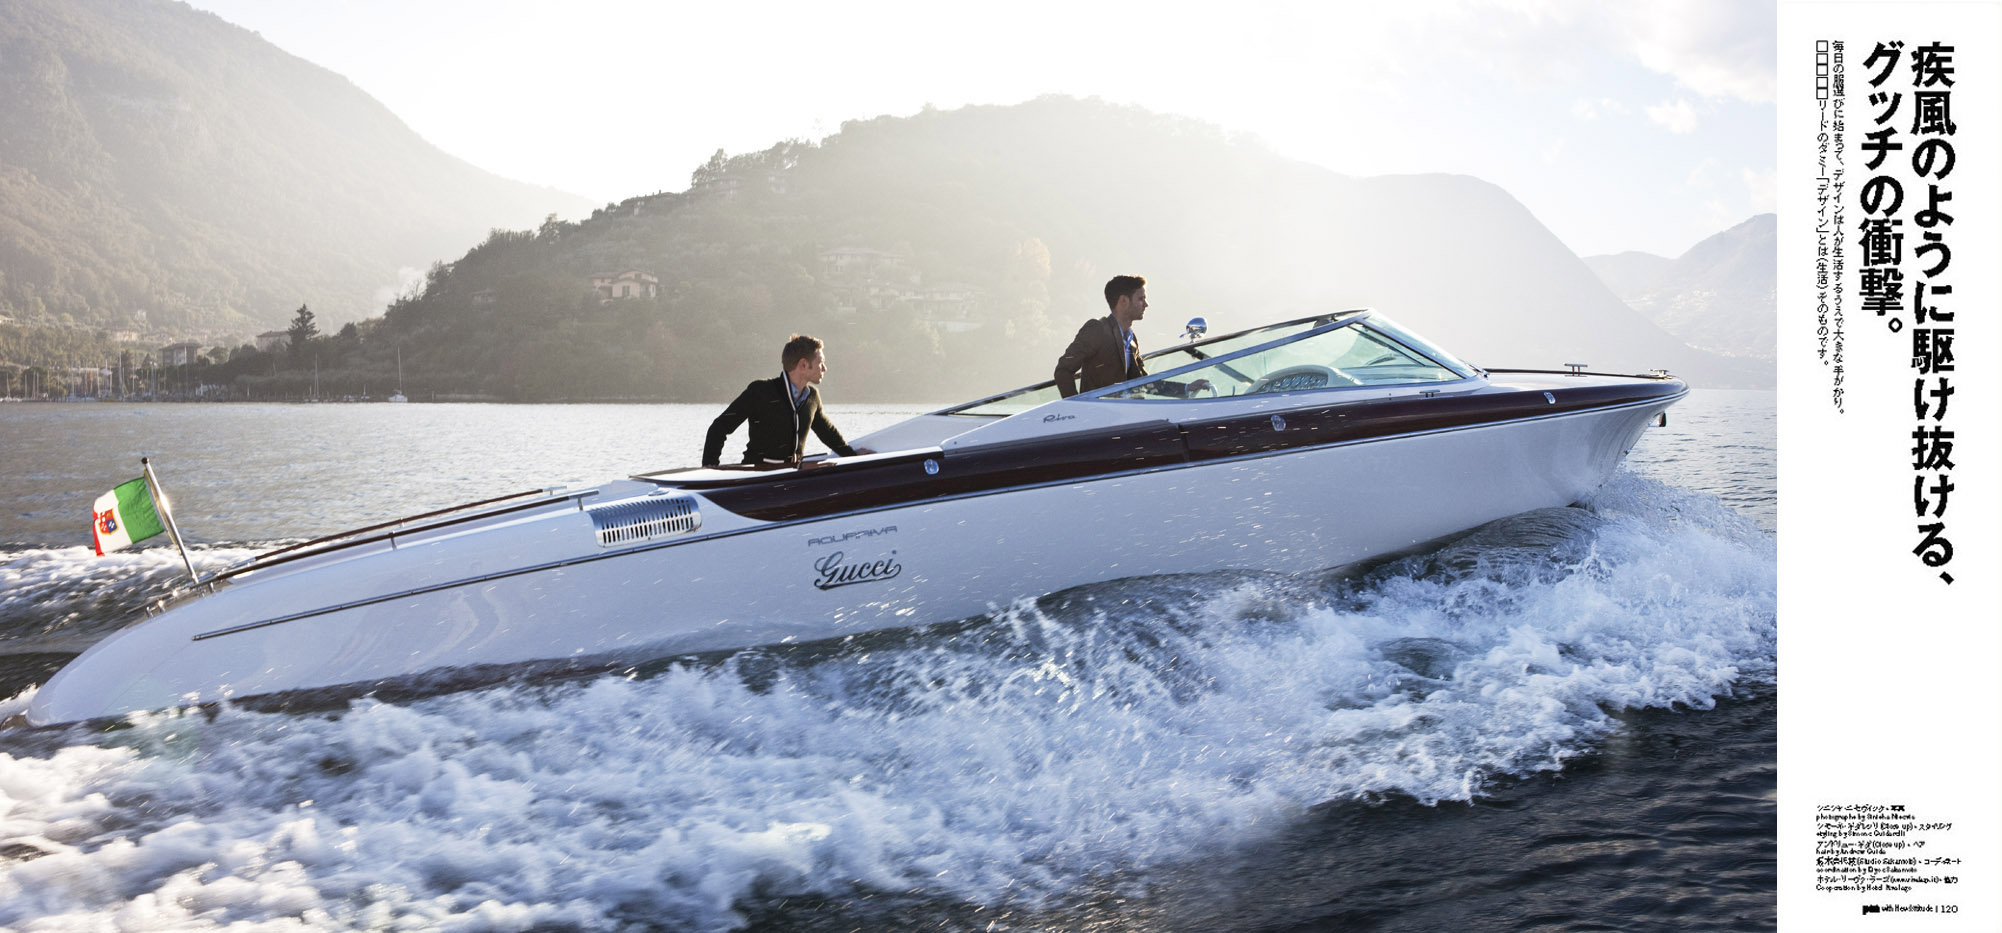 Gucci & Riva Boats for Pen Magazine